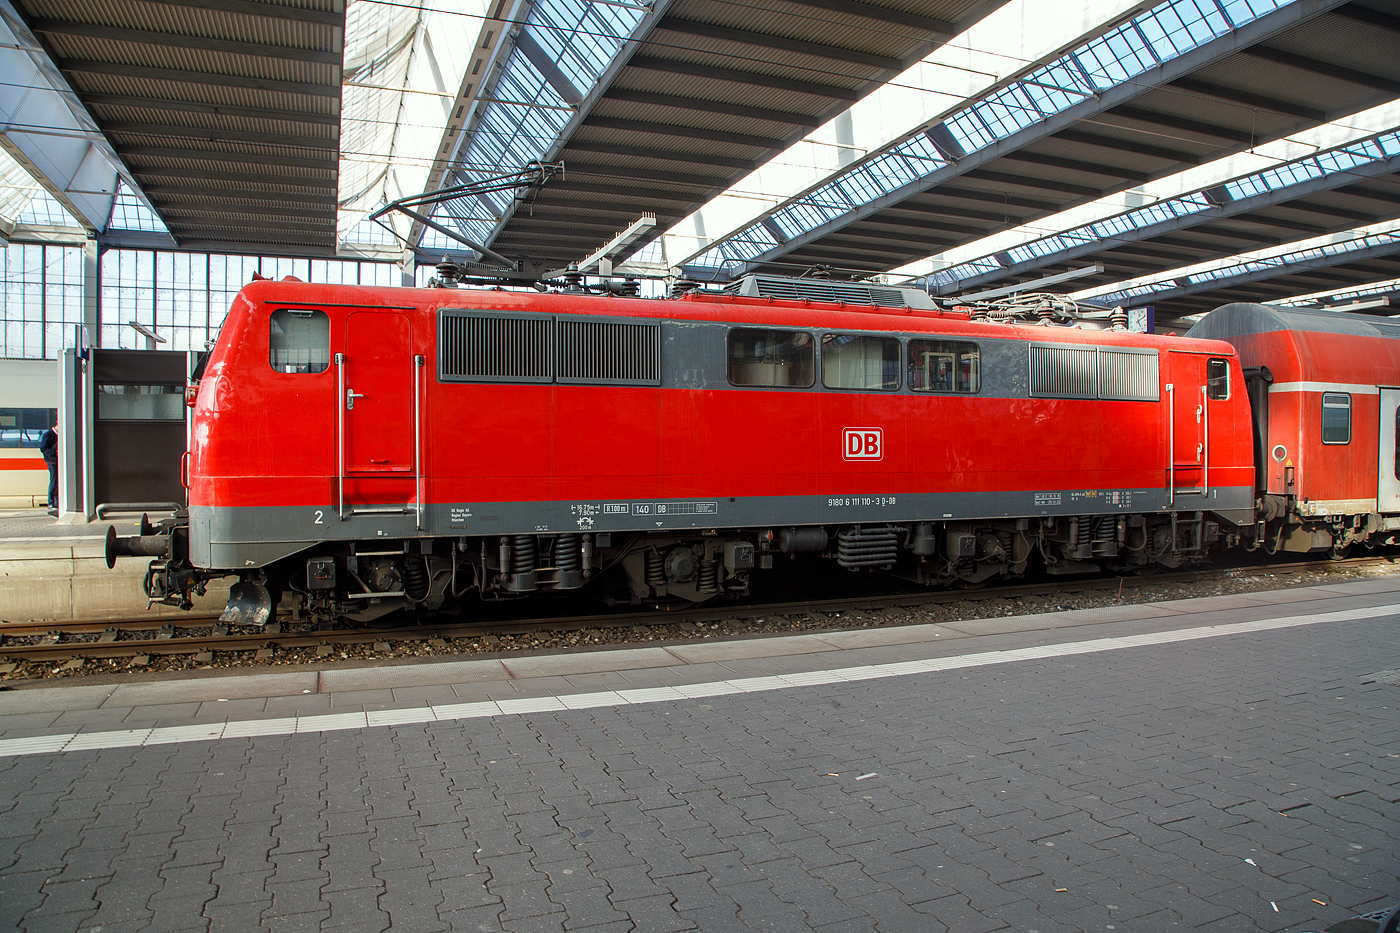 Seitenportrait der 111 110 (91 80 6111 110-3 D-DB) der DB Regio Bayern am 28 Mrz im Hauptbahnhof Mnchen, mit dem RB16 (Mnchen–Treuchtlingen).

Die 111 110 wurde 1978 von Henschel in Kassel unter der Fabriknummer 32163 gebaut und an die Deutsche Bundesbahn geliefert.
